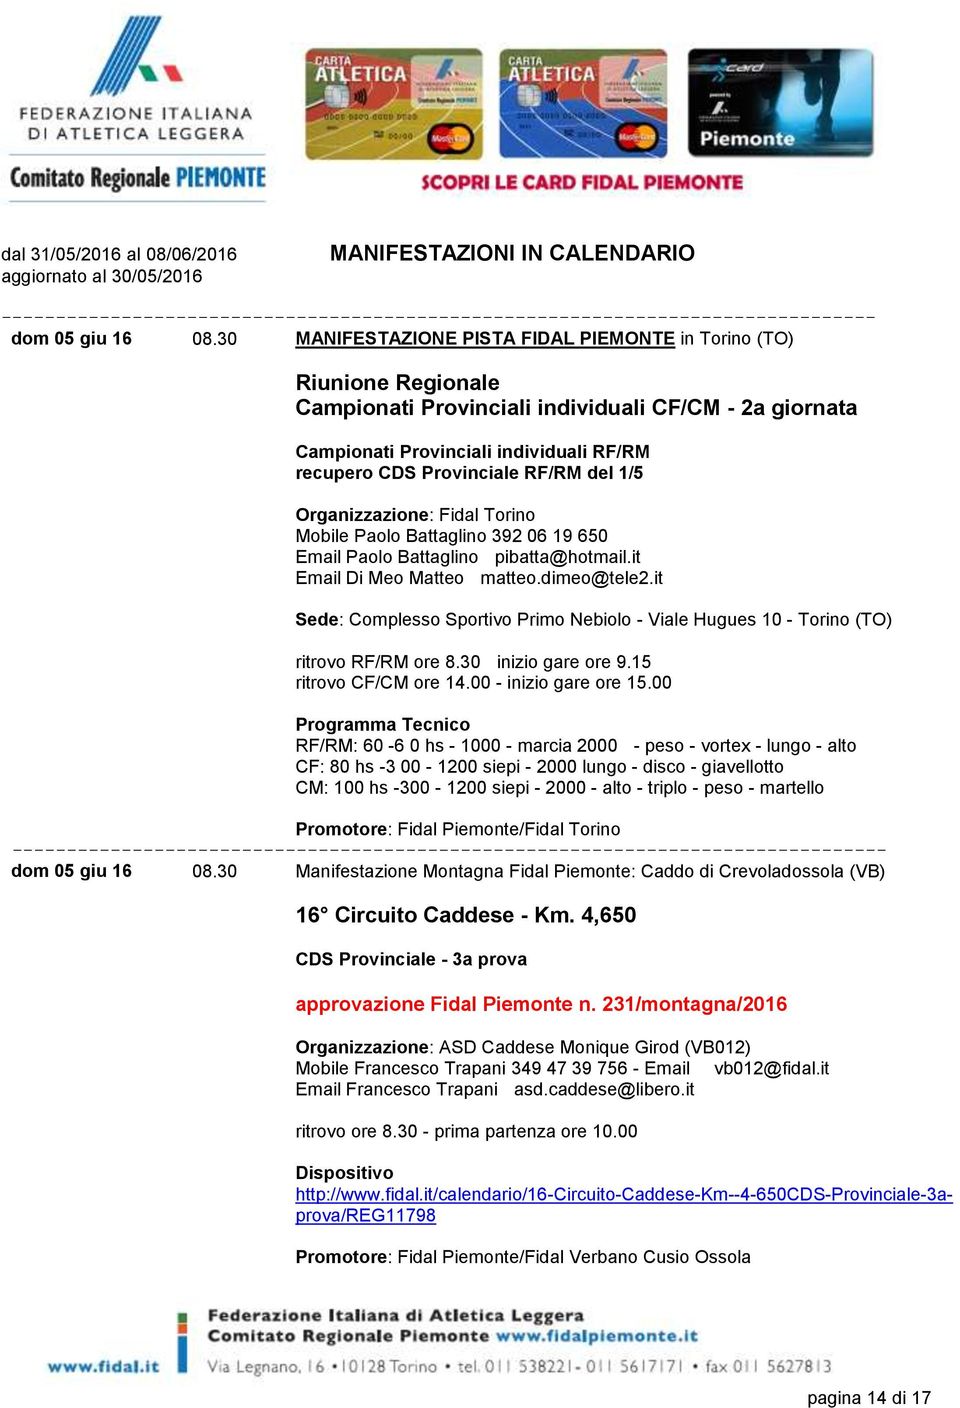 del 1/5 Organizzazione: Fidal Torino Mobile Paolo Battaglino 392 06 19 650 Email Paolo Battaglino pibatta@hotmail.it Email Di Meo Matteo matteo.dimeo@tele2.